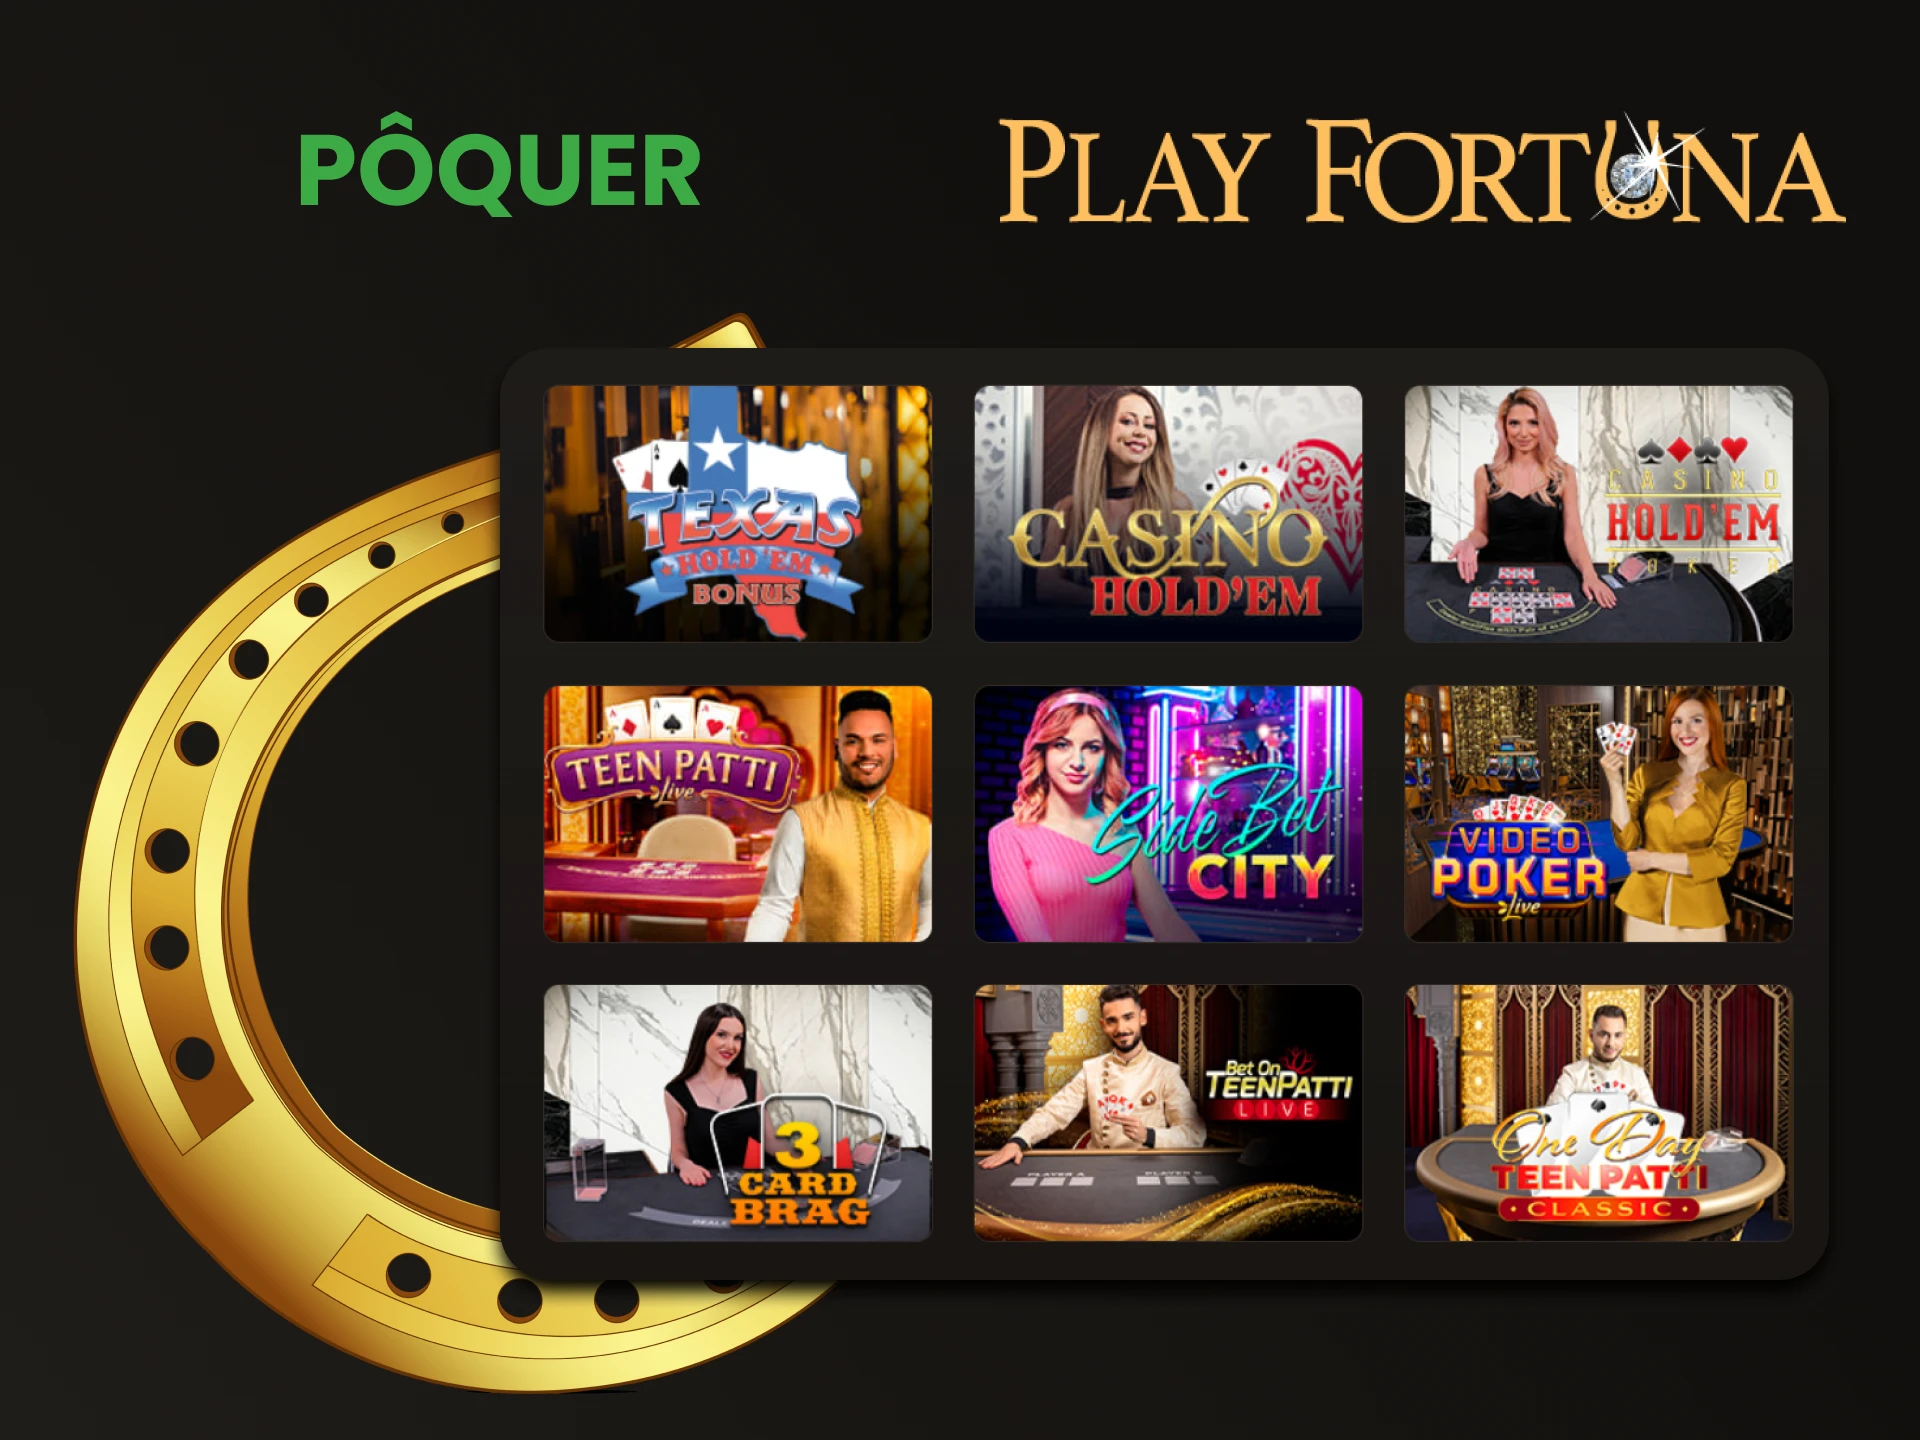 Recomendamos jogar Poquer na seção de cassino ao vivo do Play Fortuna.